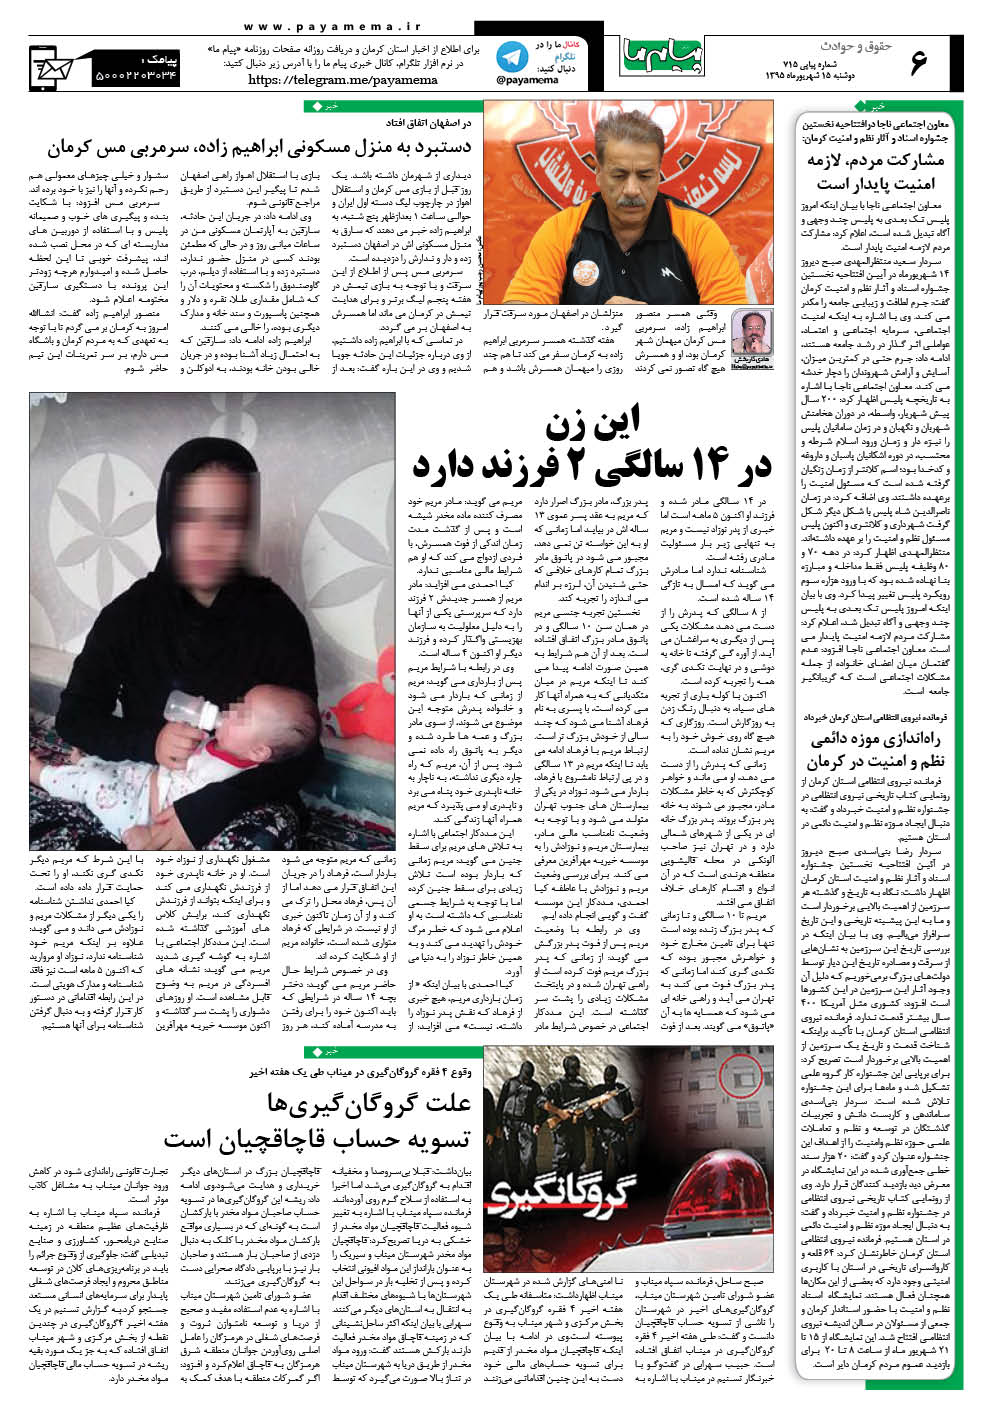 صفحه حقوق و حوادث شماره 715 روزنامه پیام ما